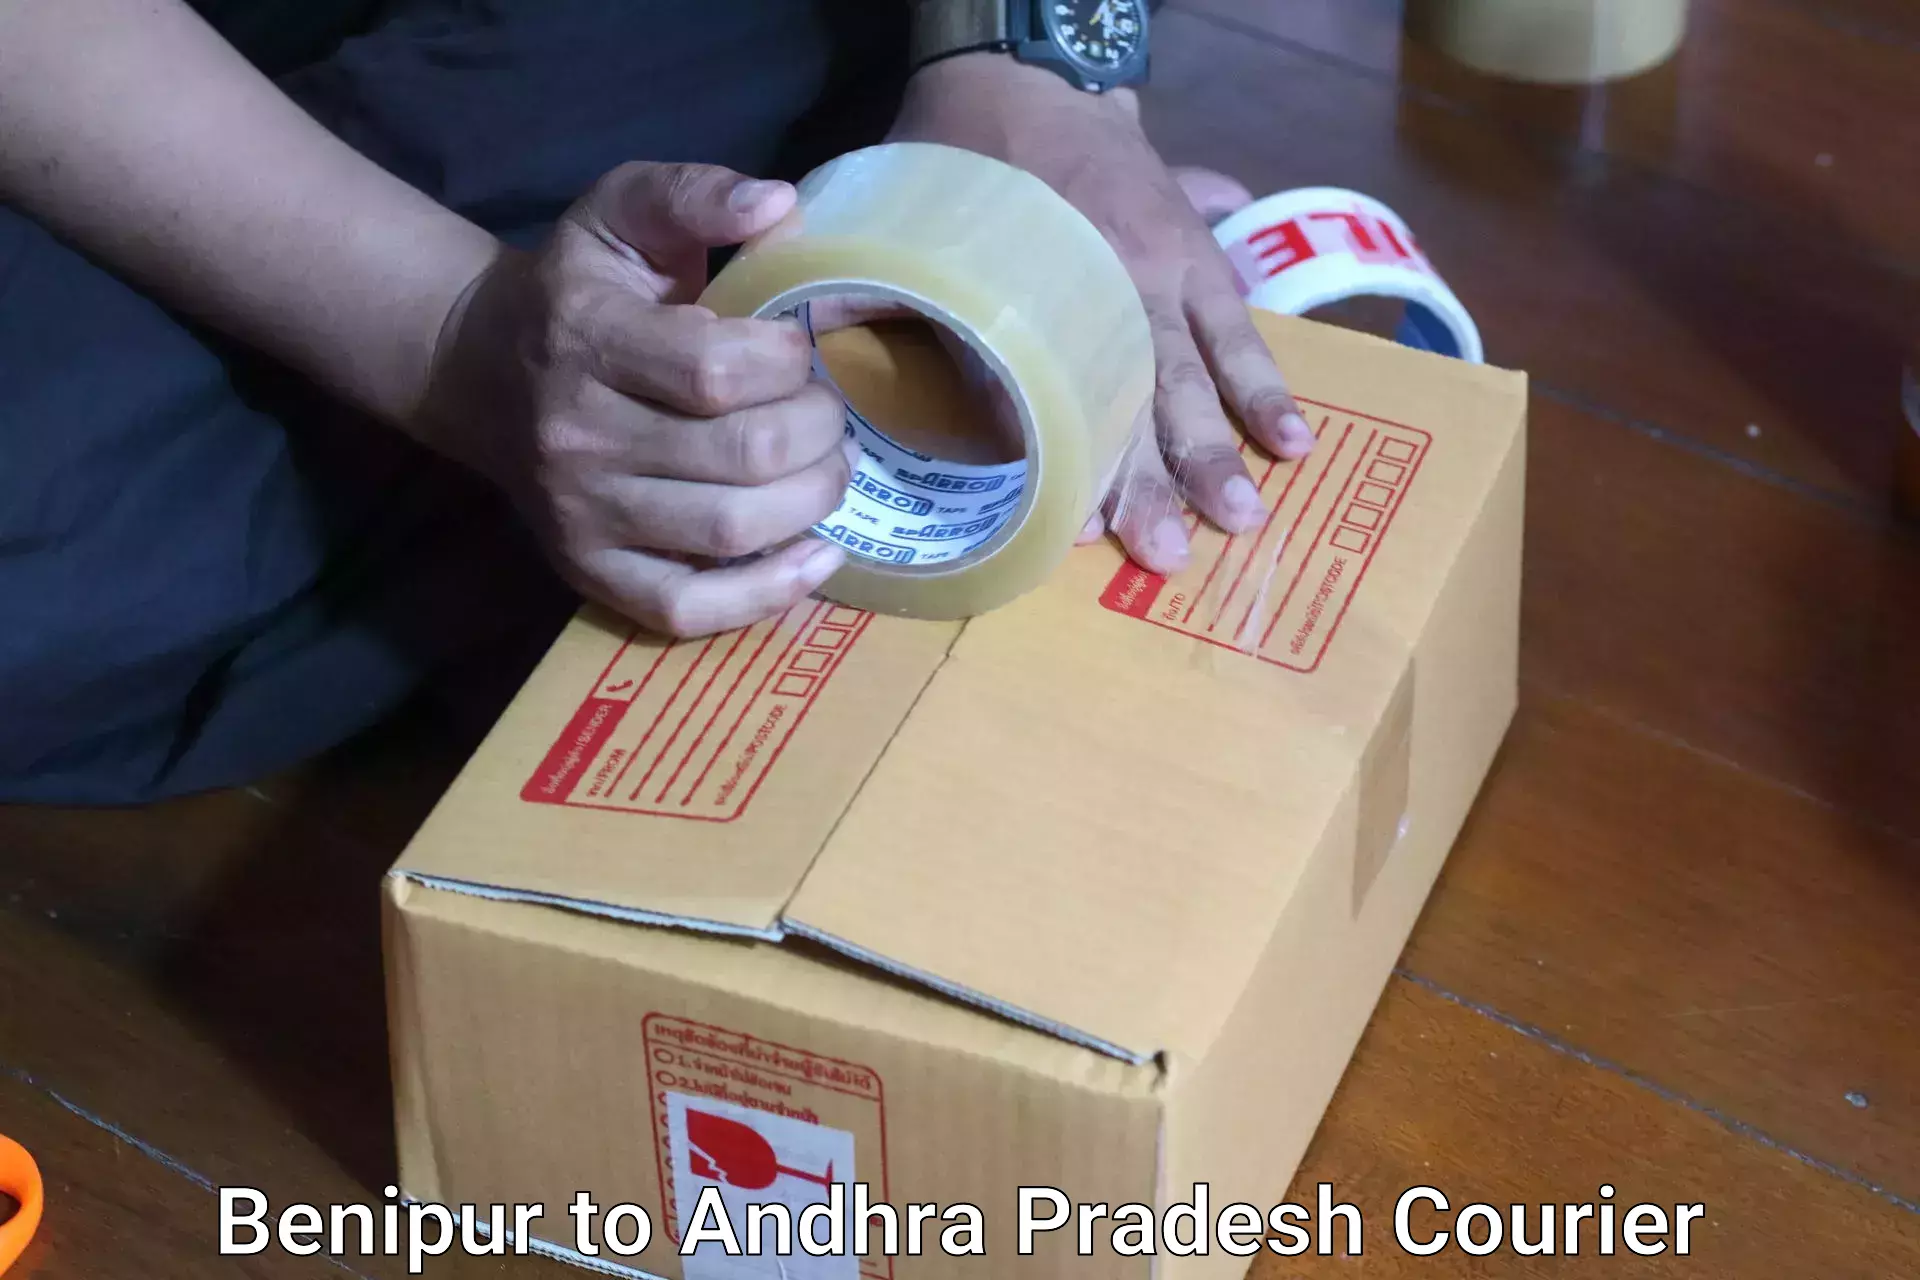 Baggage shipping calculator Benipur to Andhra Pradesh